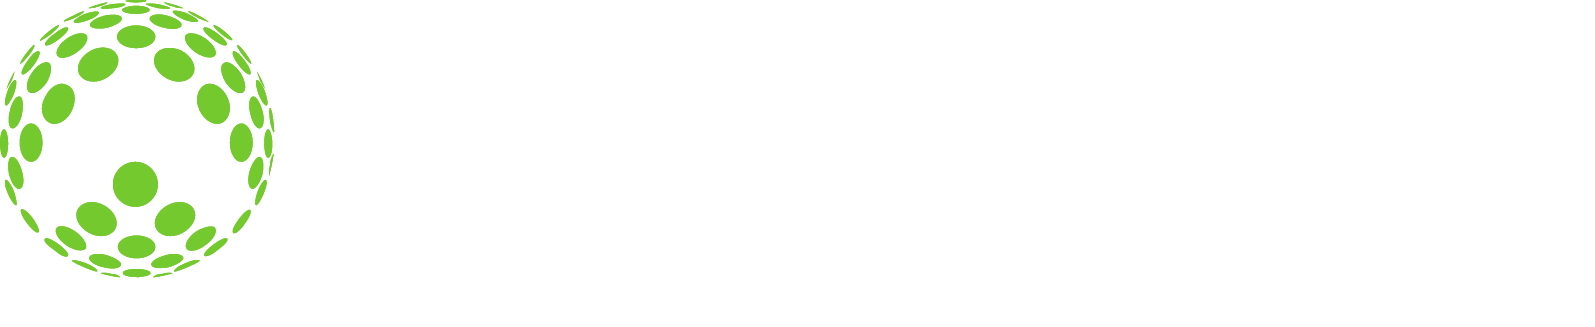 Allscripts logo grand pour les fonds sombres (PNG transparent)